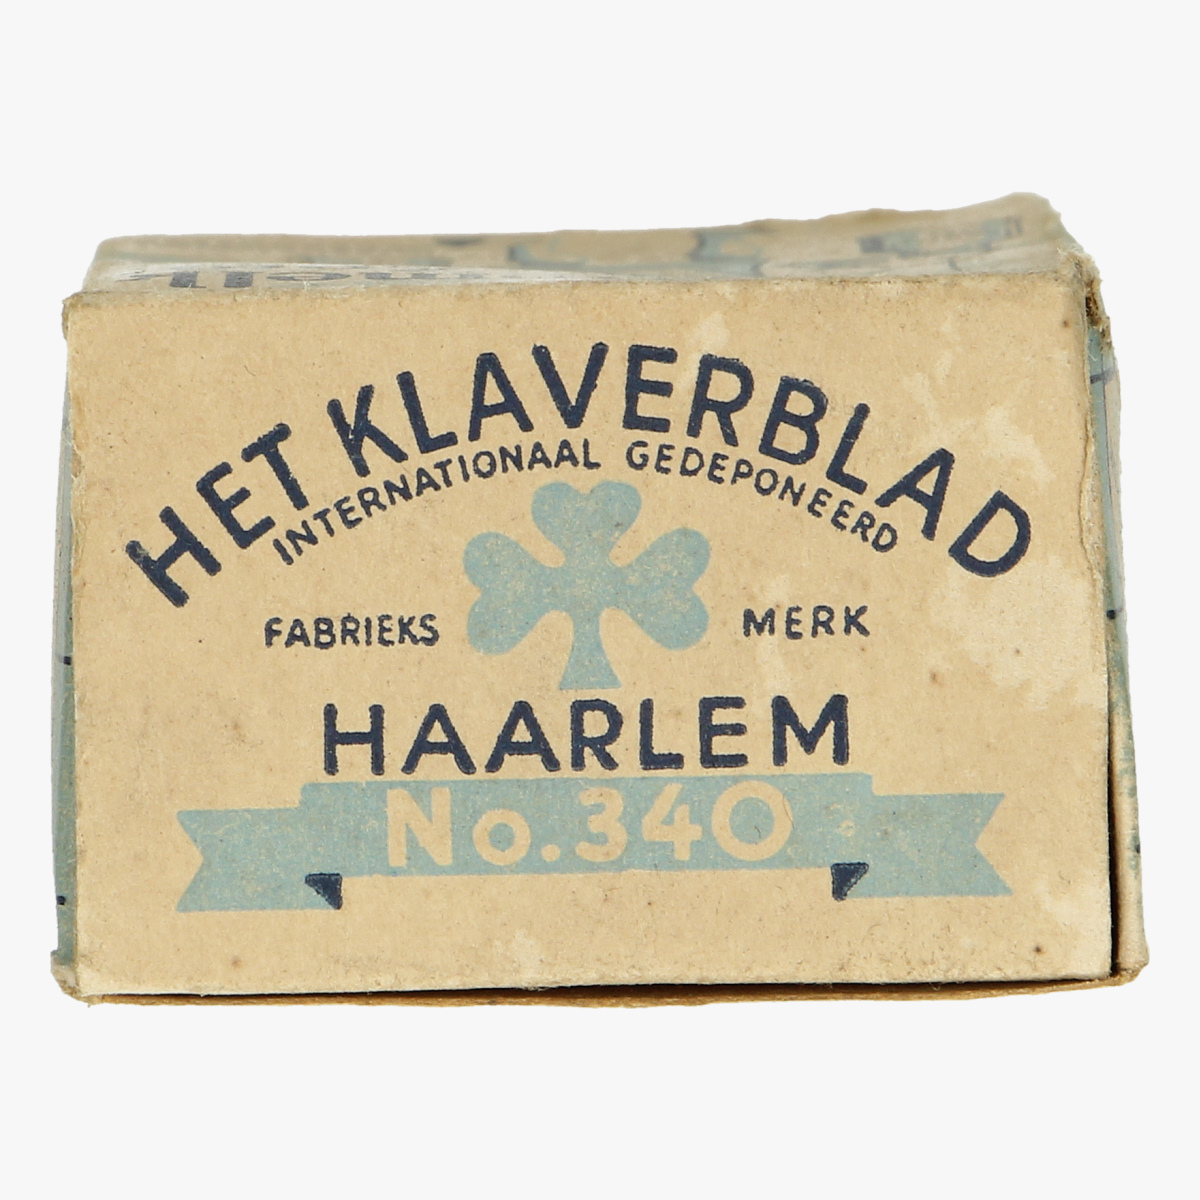 Afbeeldingen van karnemelk zeep doos het melkmeisje Het Klaverblad Haarlem